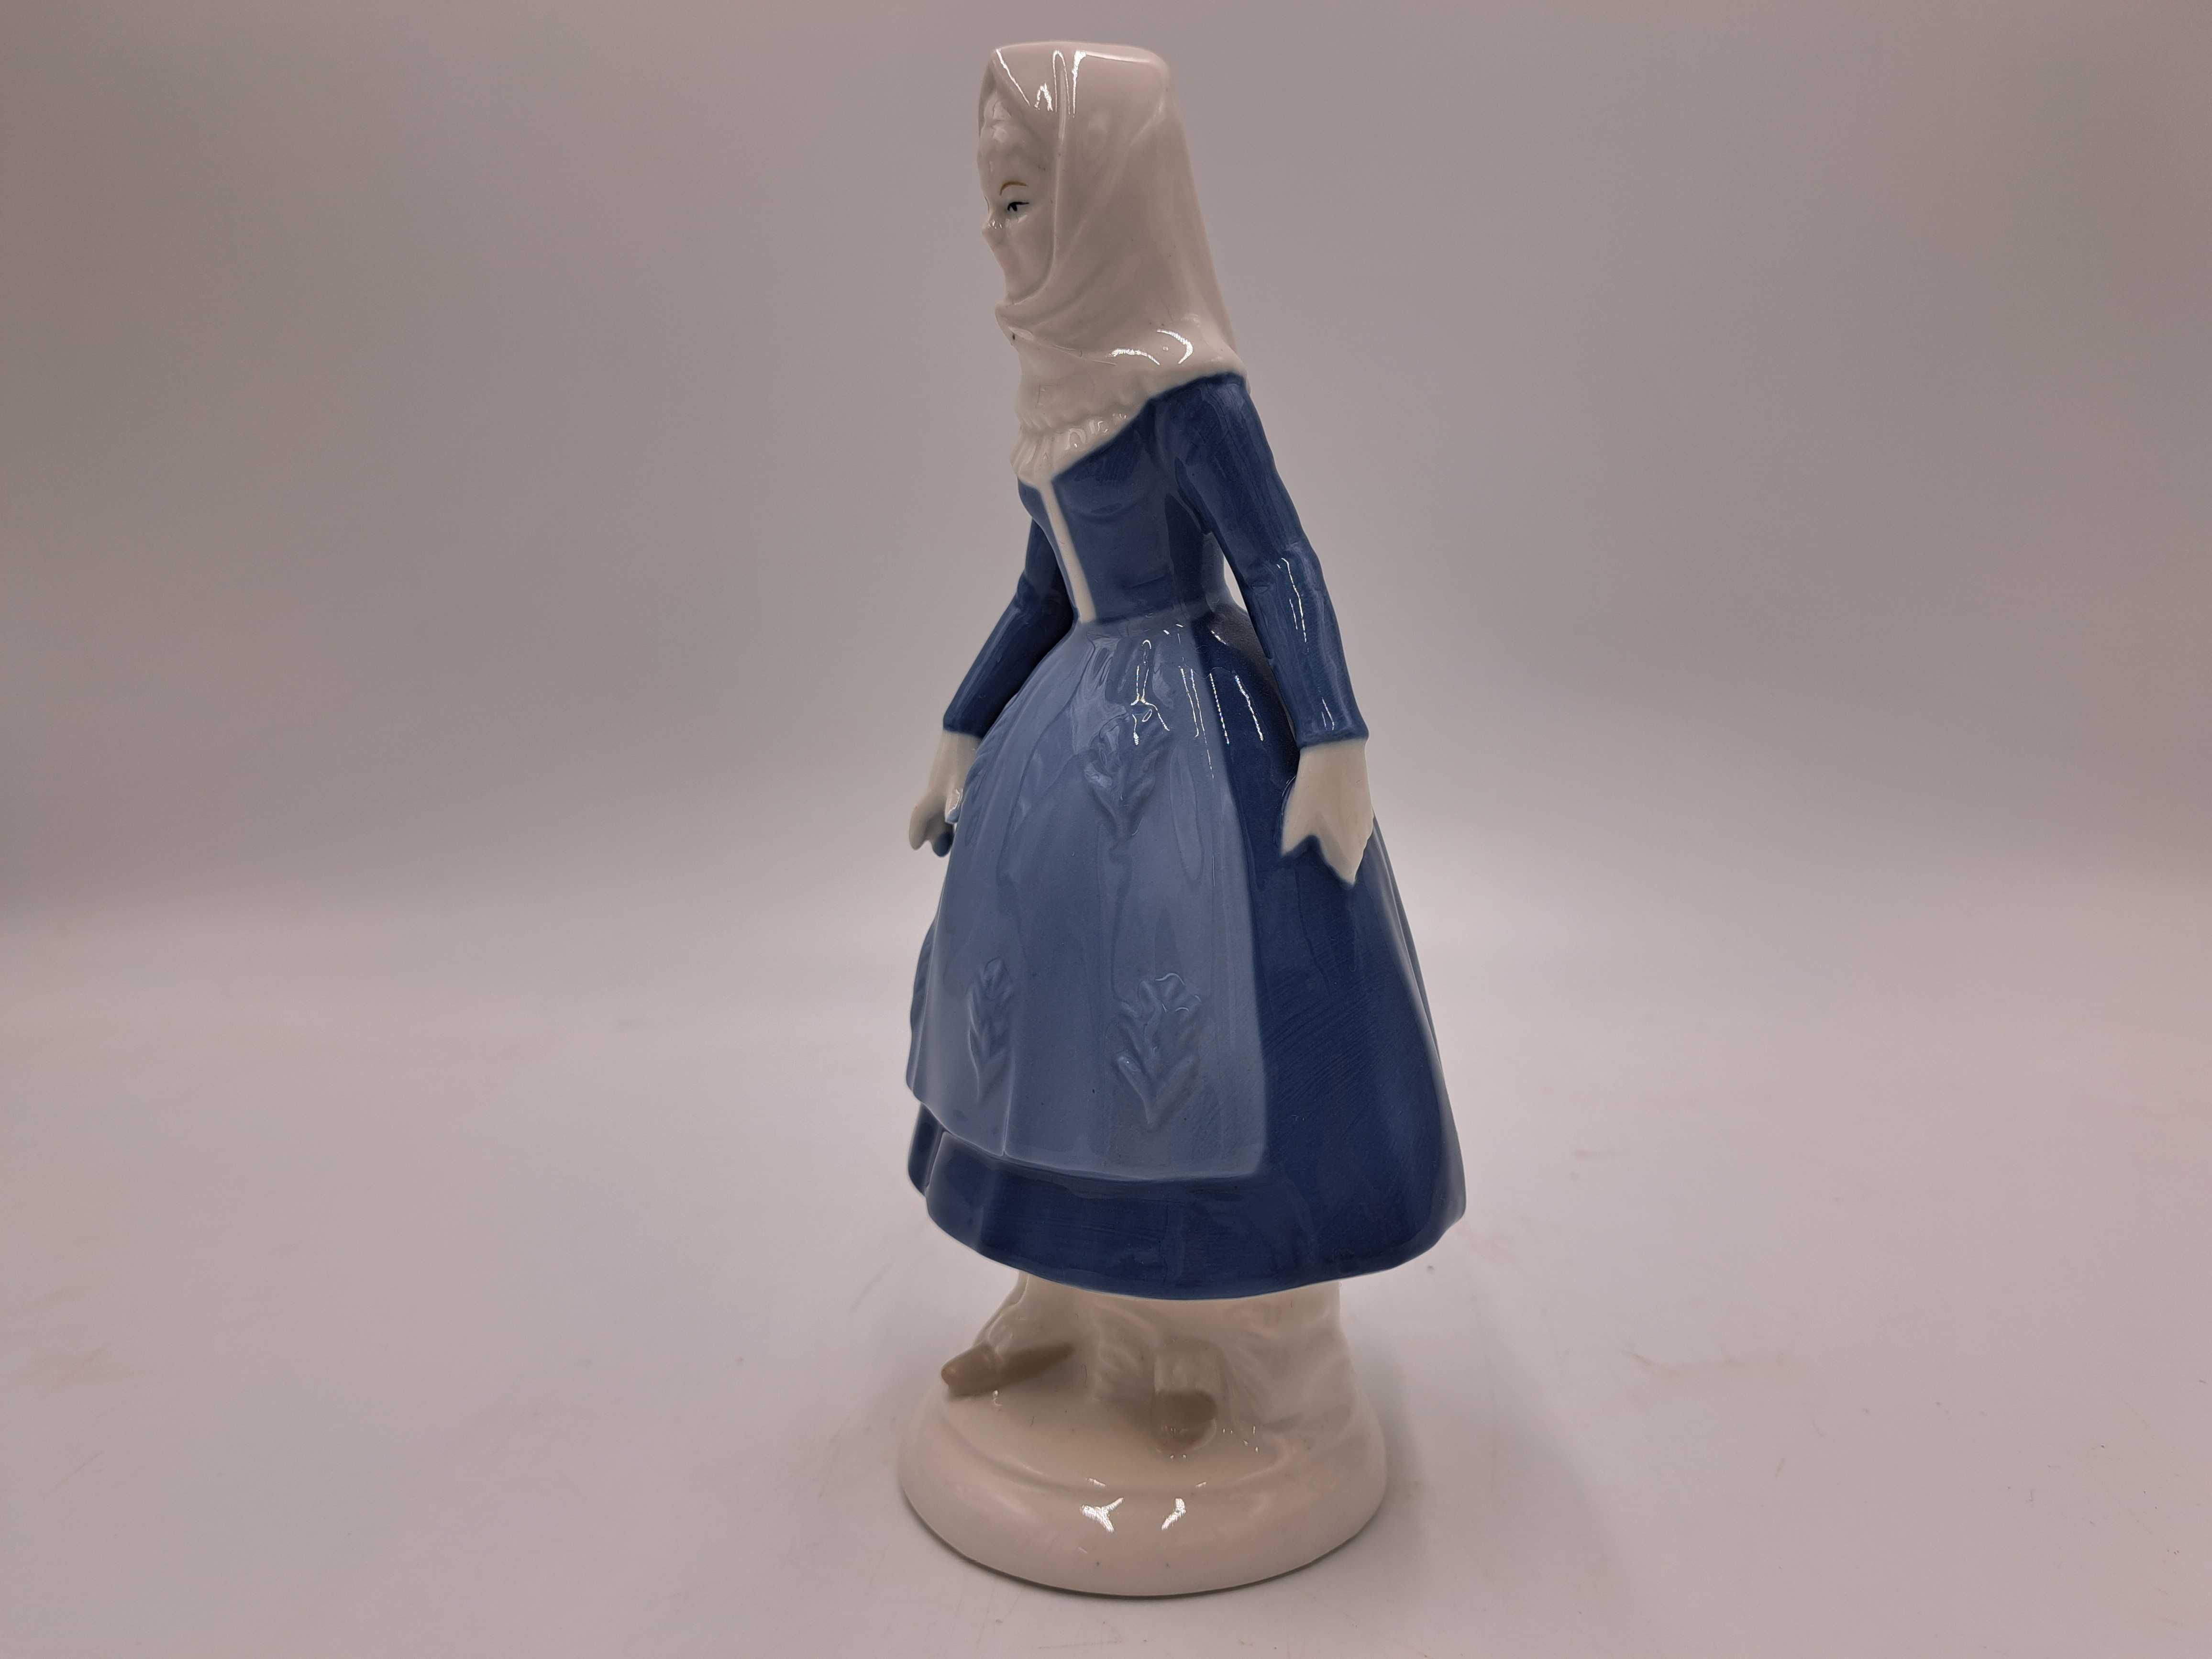 Figurka porcelanowa Lippelsdorf Turyngia kobieta w chustce niebieska